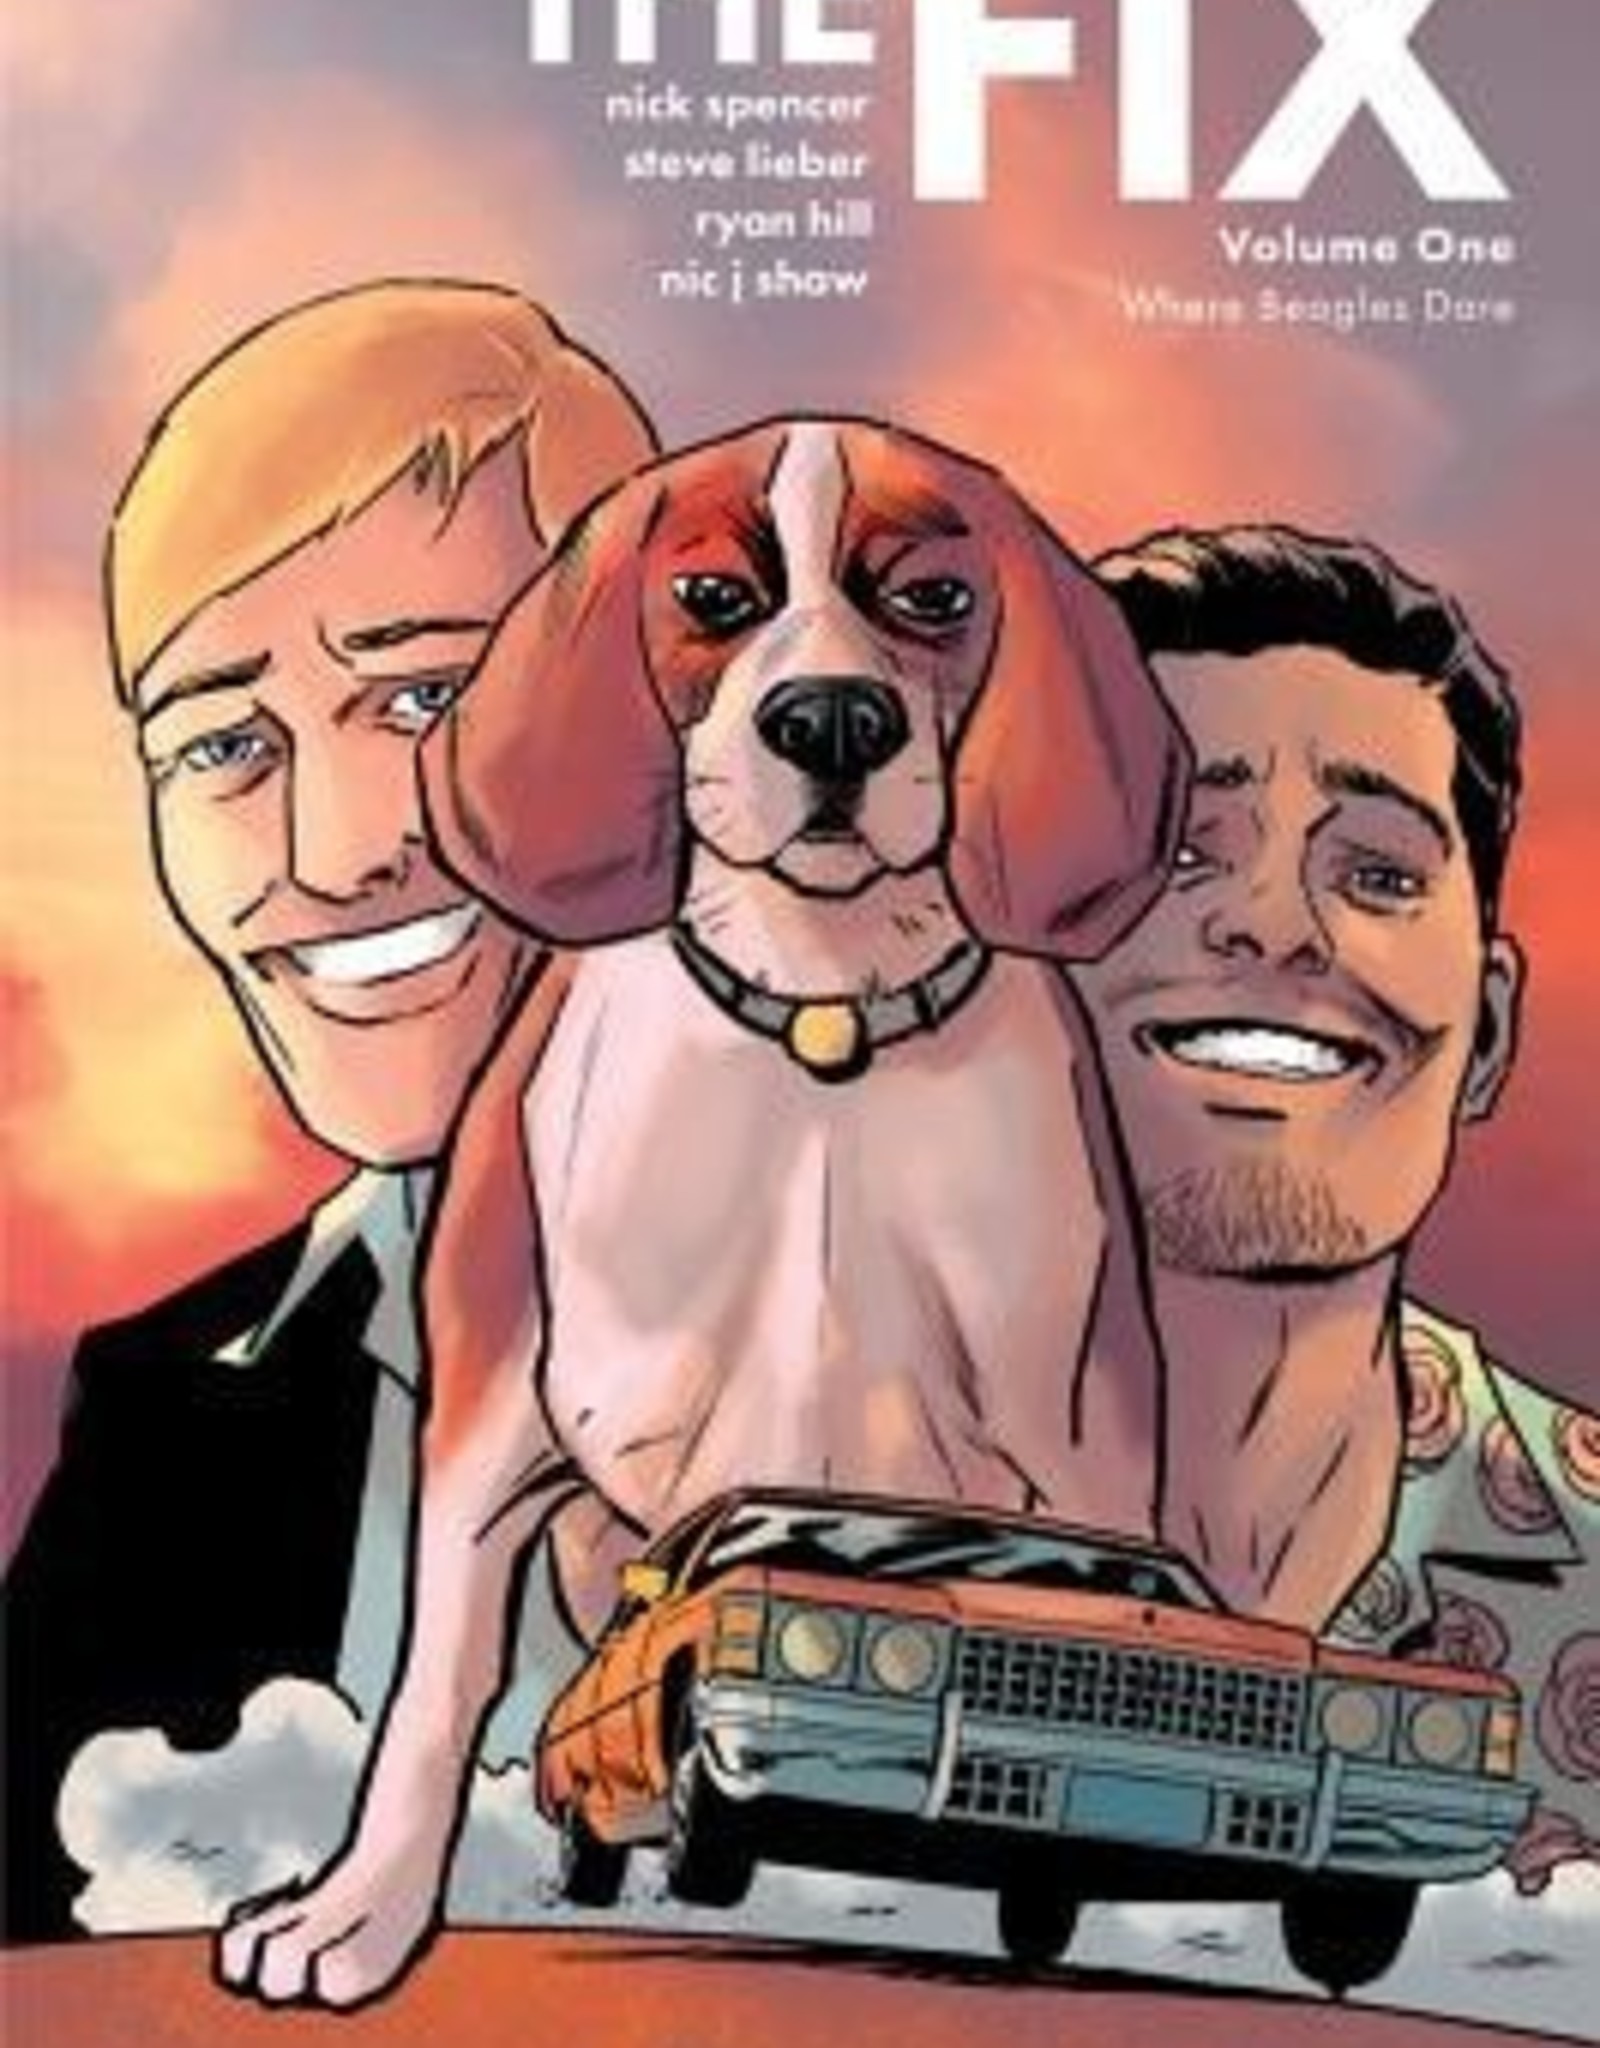 Image Comics The Fix volume 1 Where Beagles Dare